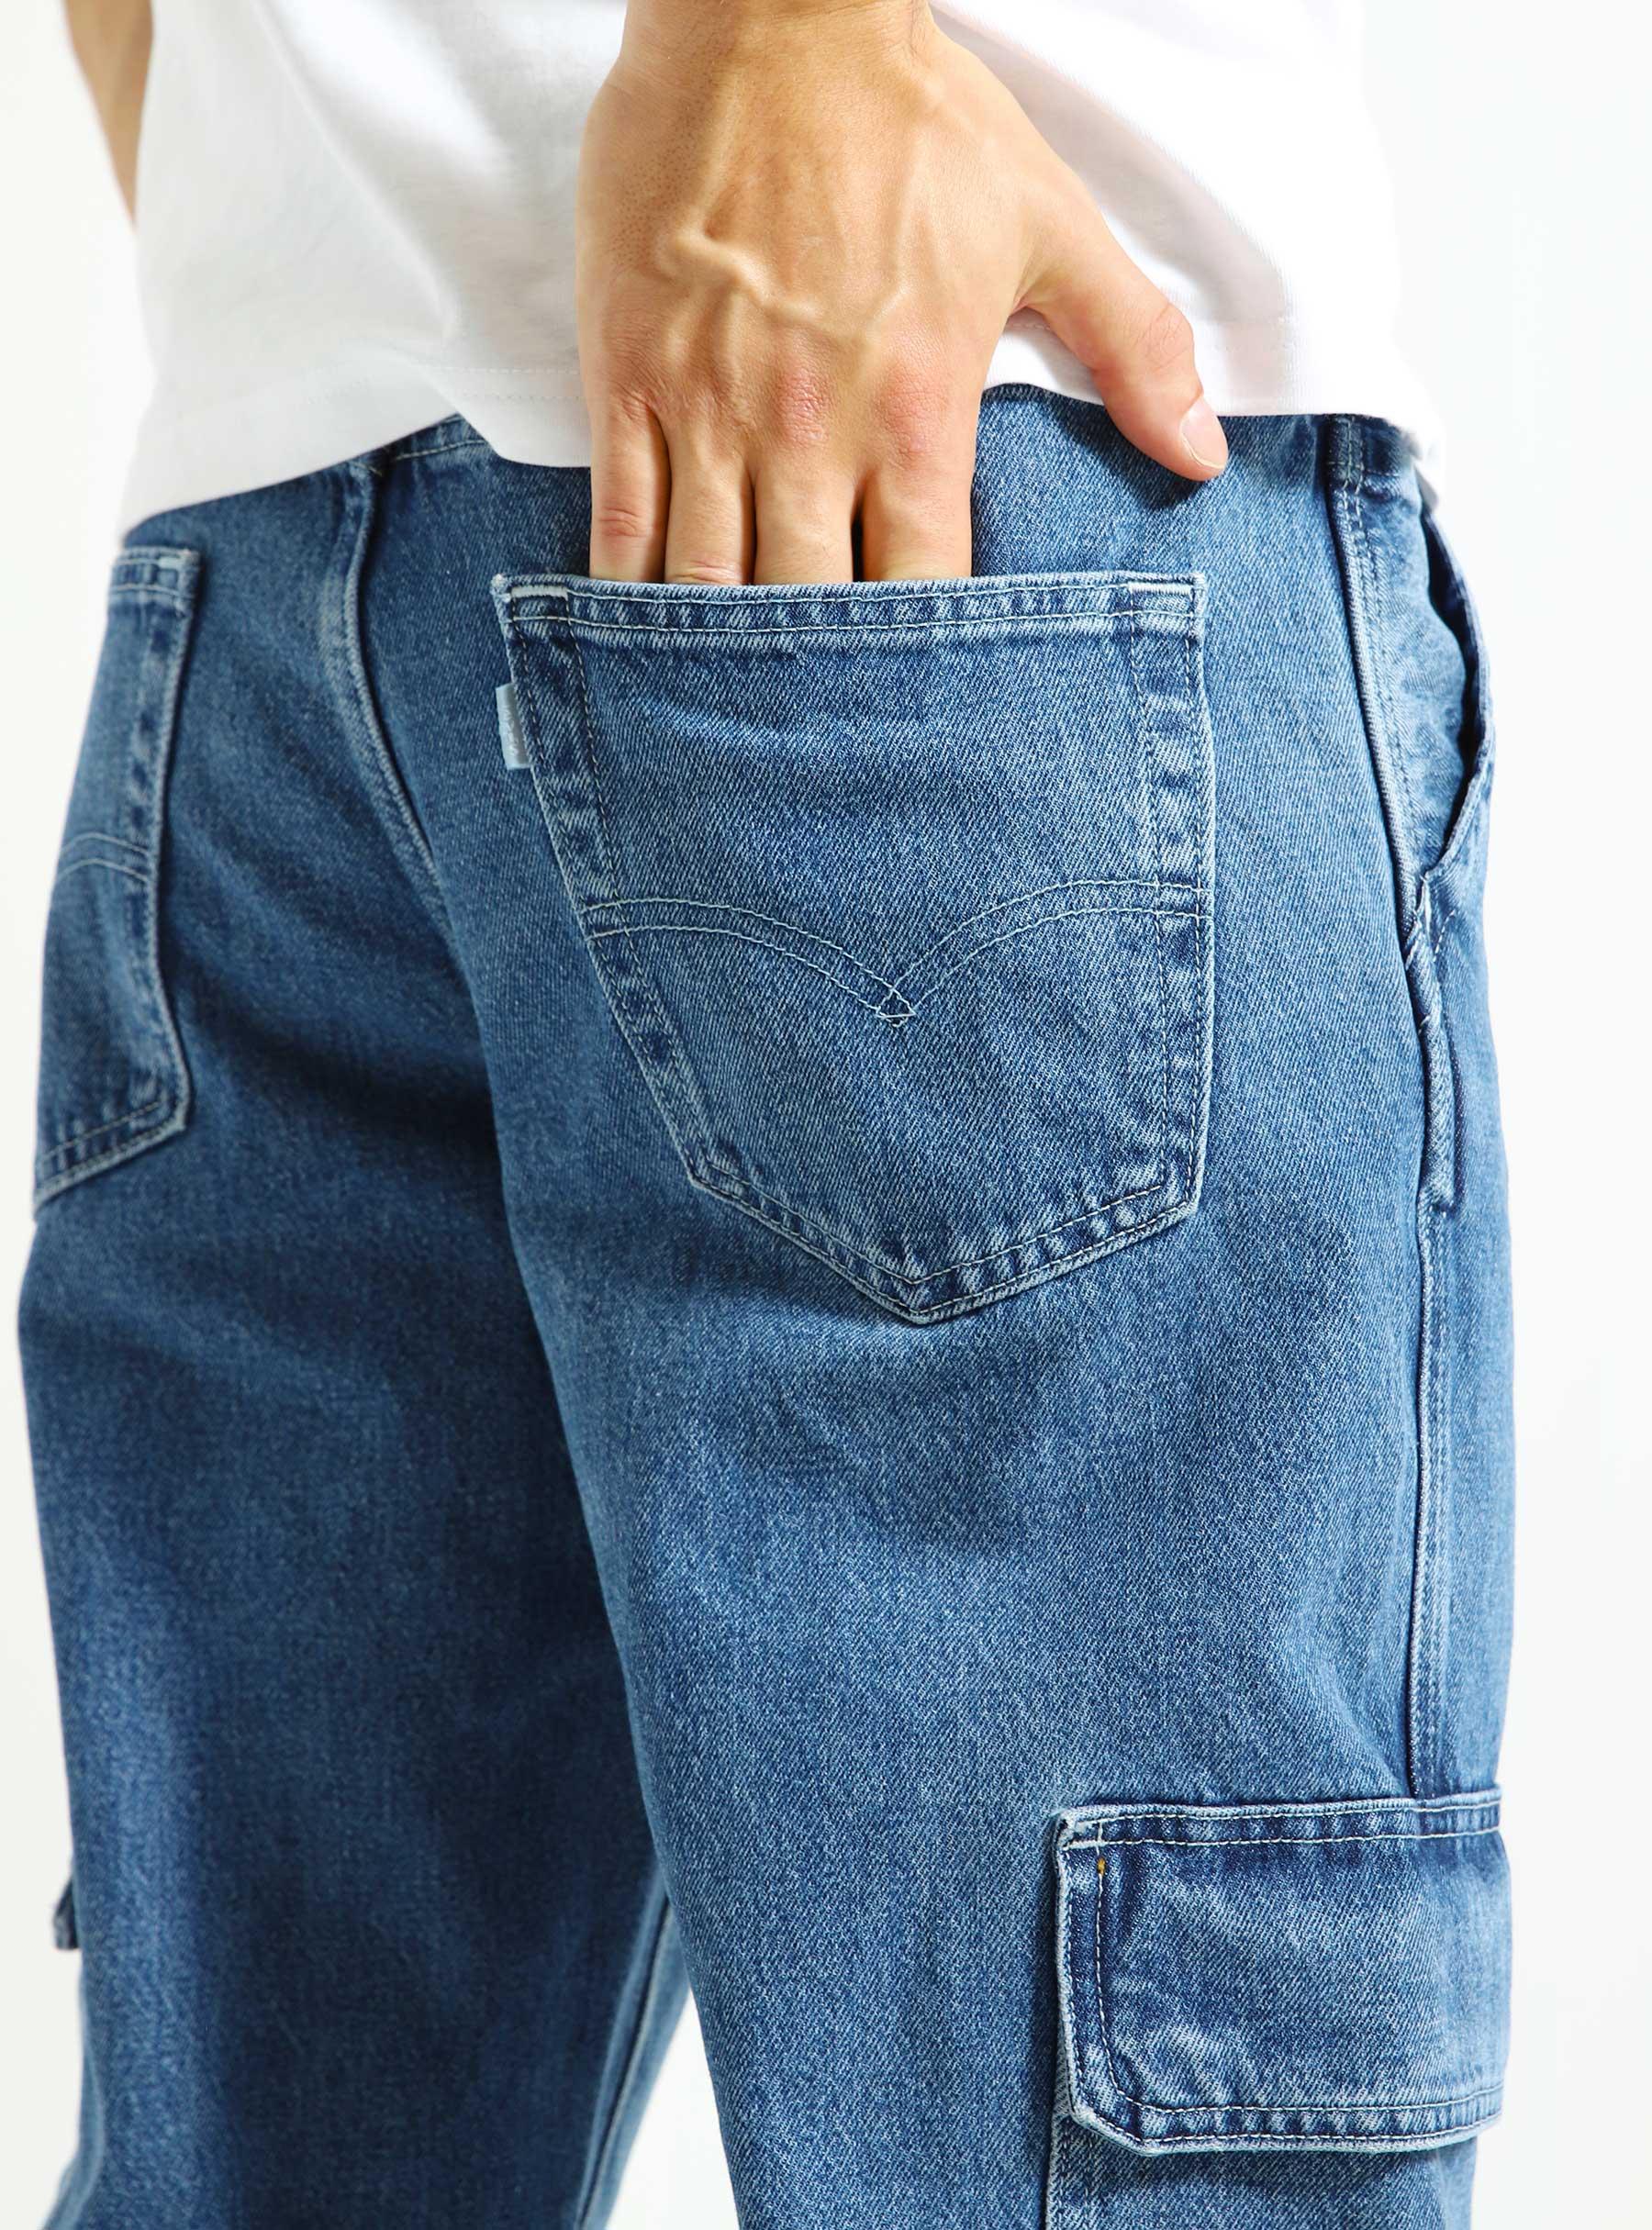 Levis Silvertab Loose Cargo Jeans Indigo Worn In - Freshcotton